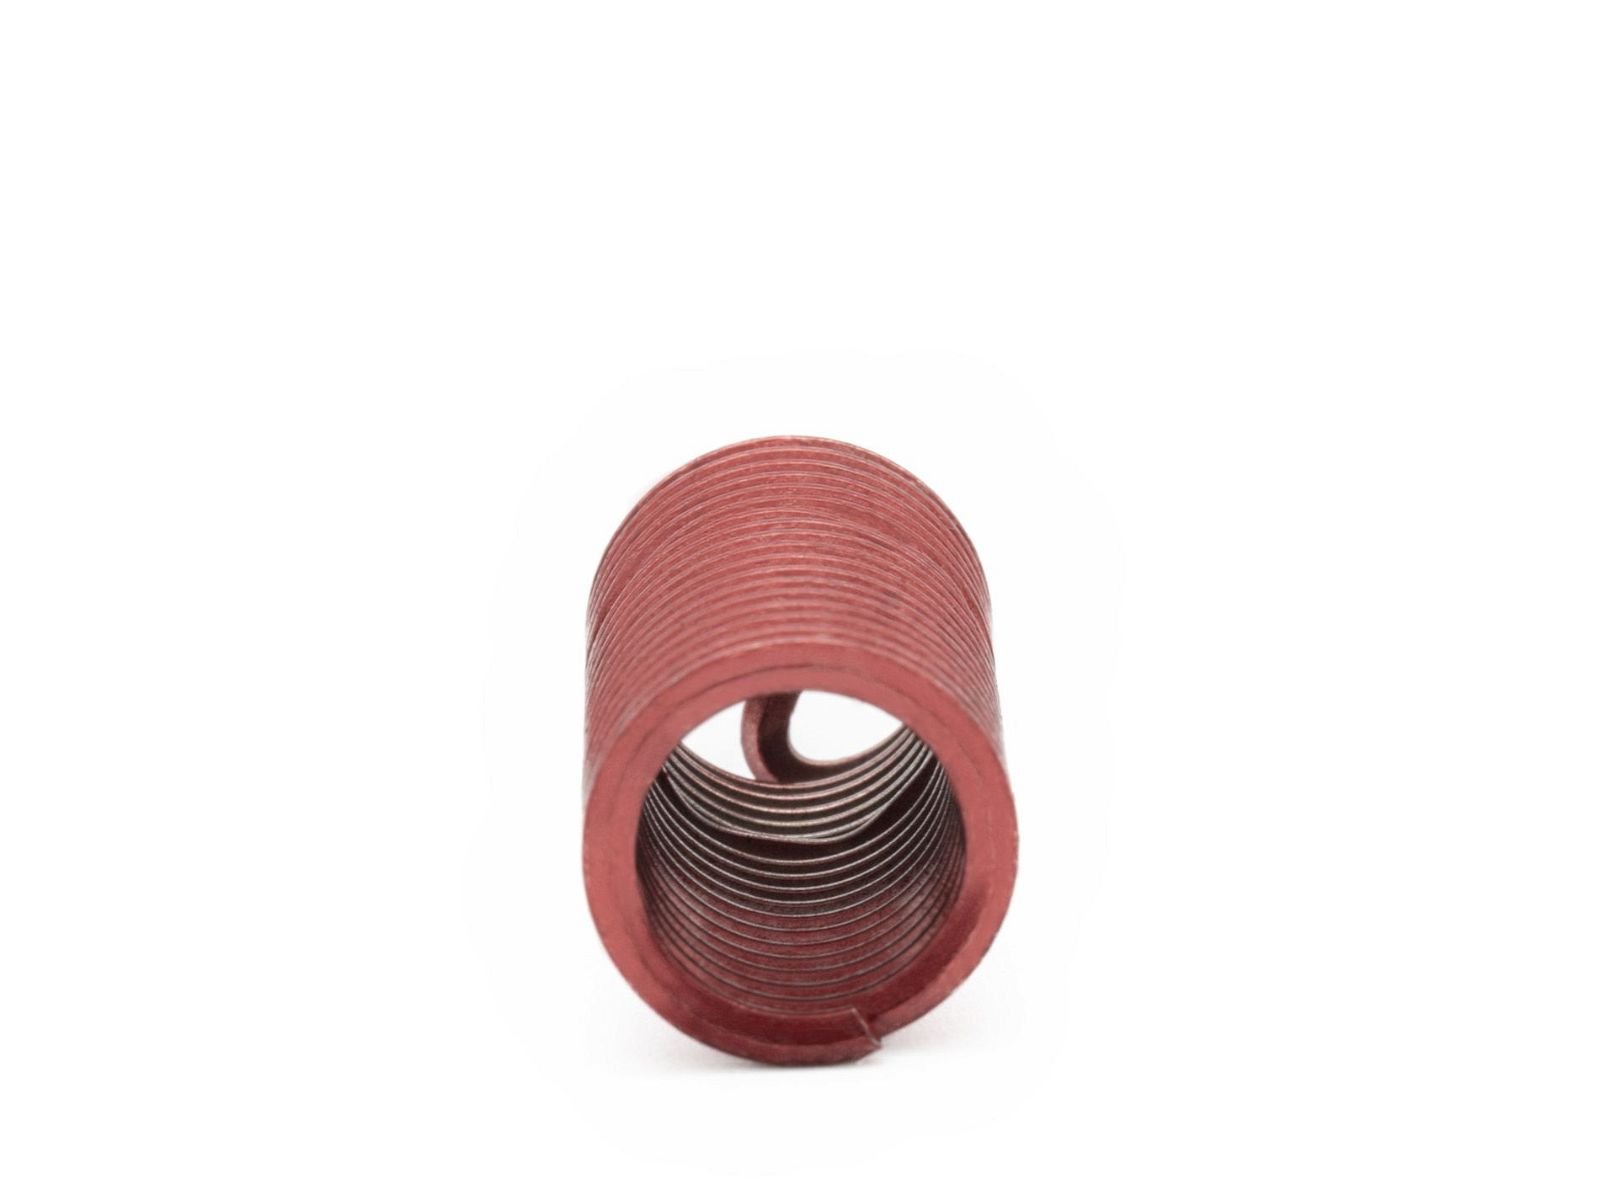 BaerCoil Wire Thread Inserts M 10 x 1.5 - 3.0 D (30 mm) - screw grip (screw locking) - 100 pcs.